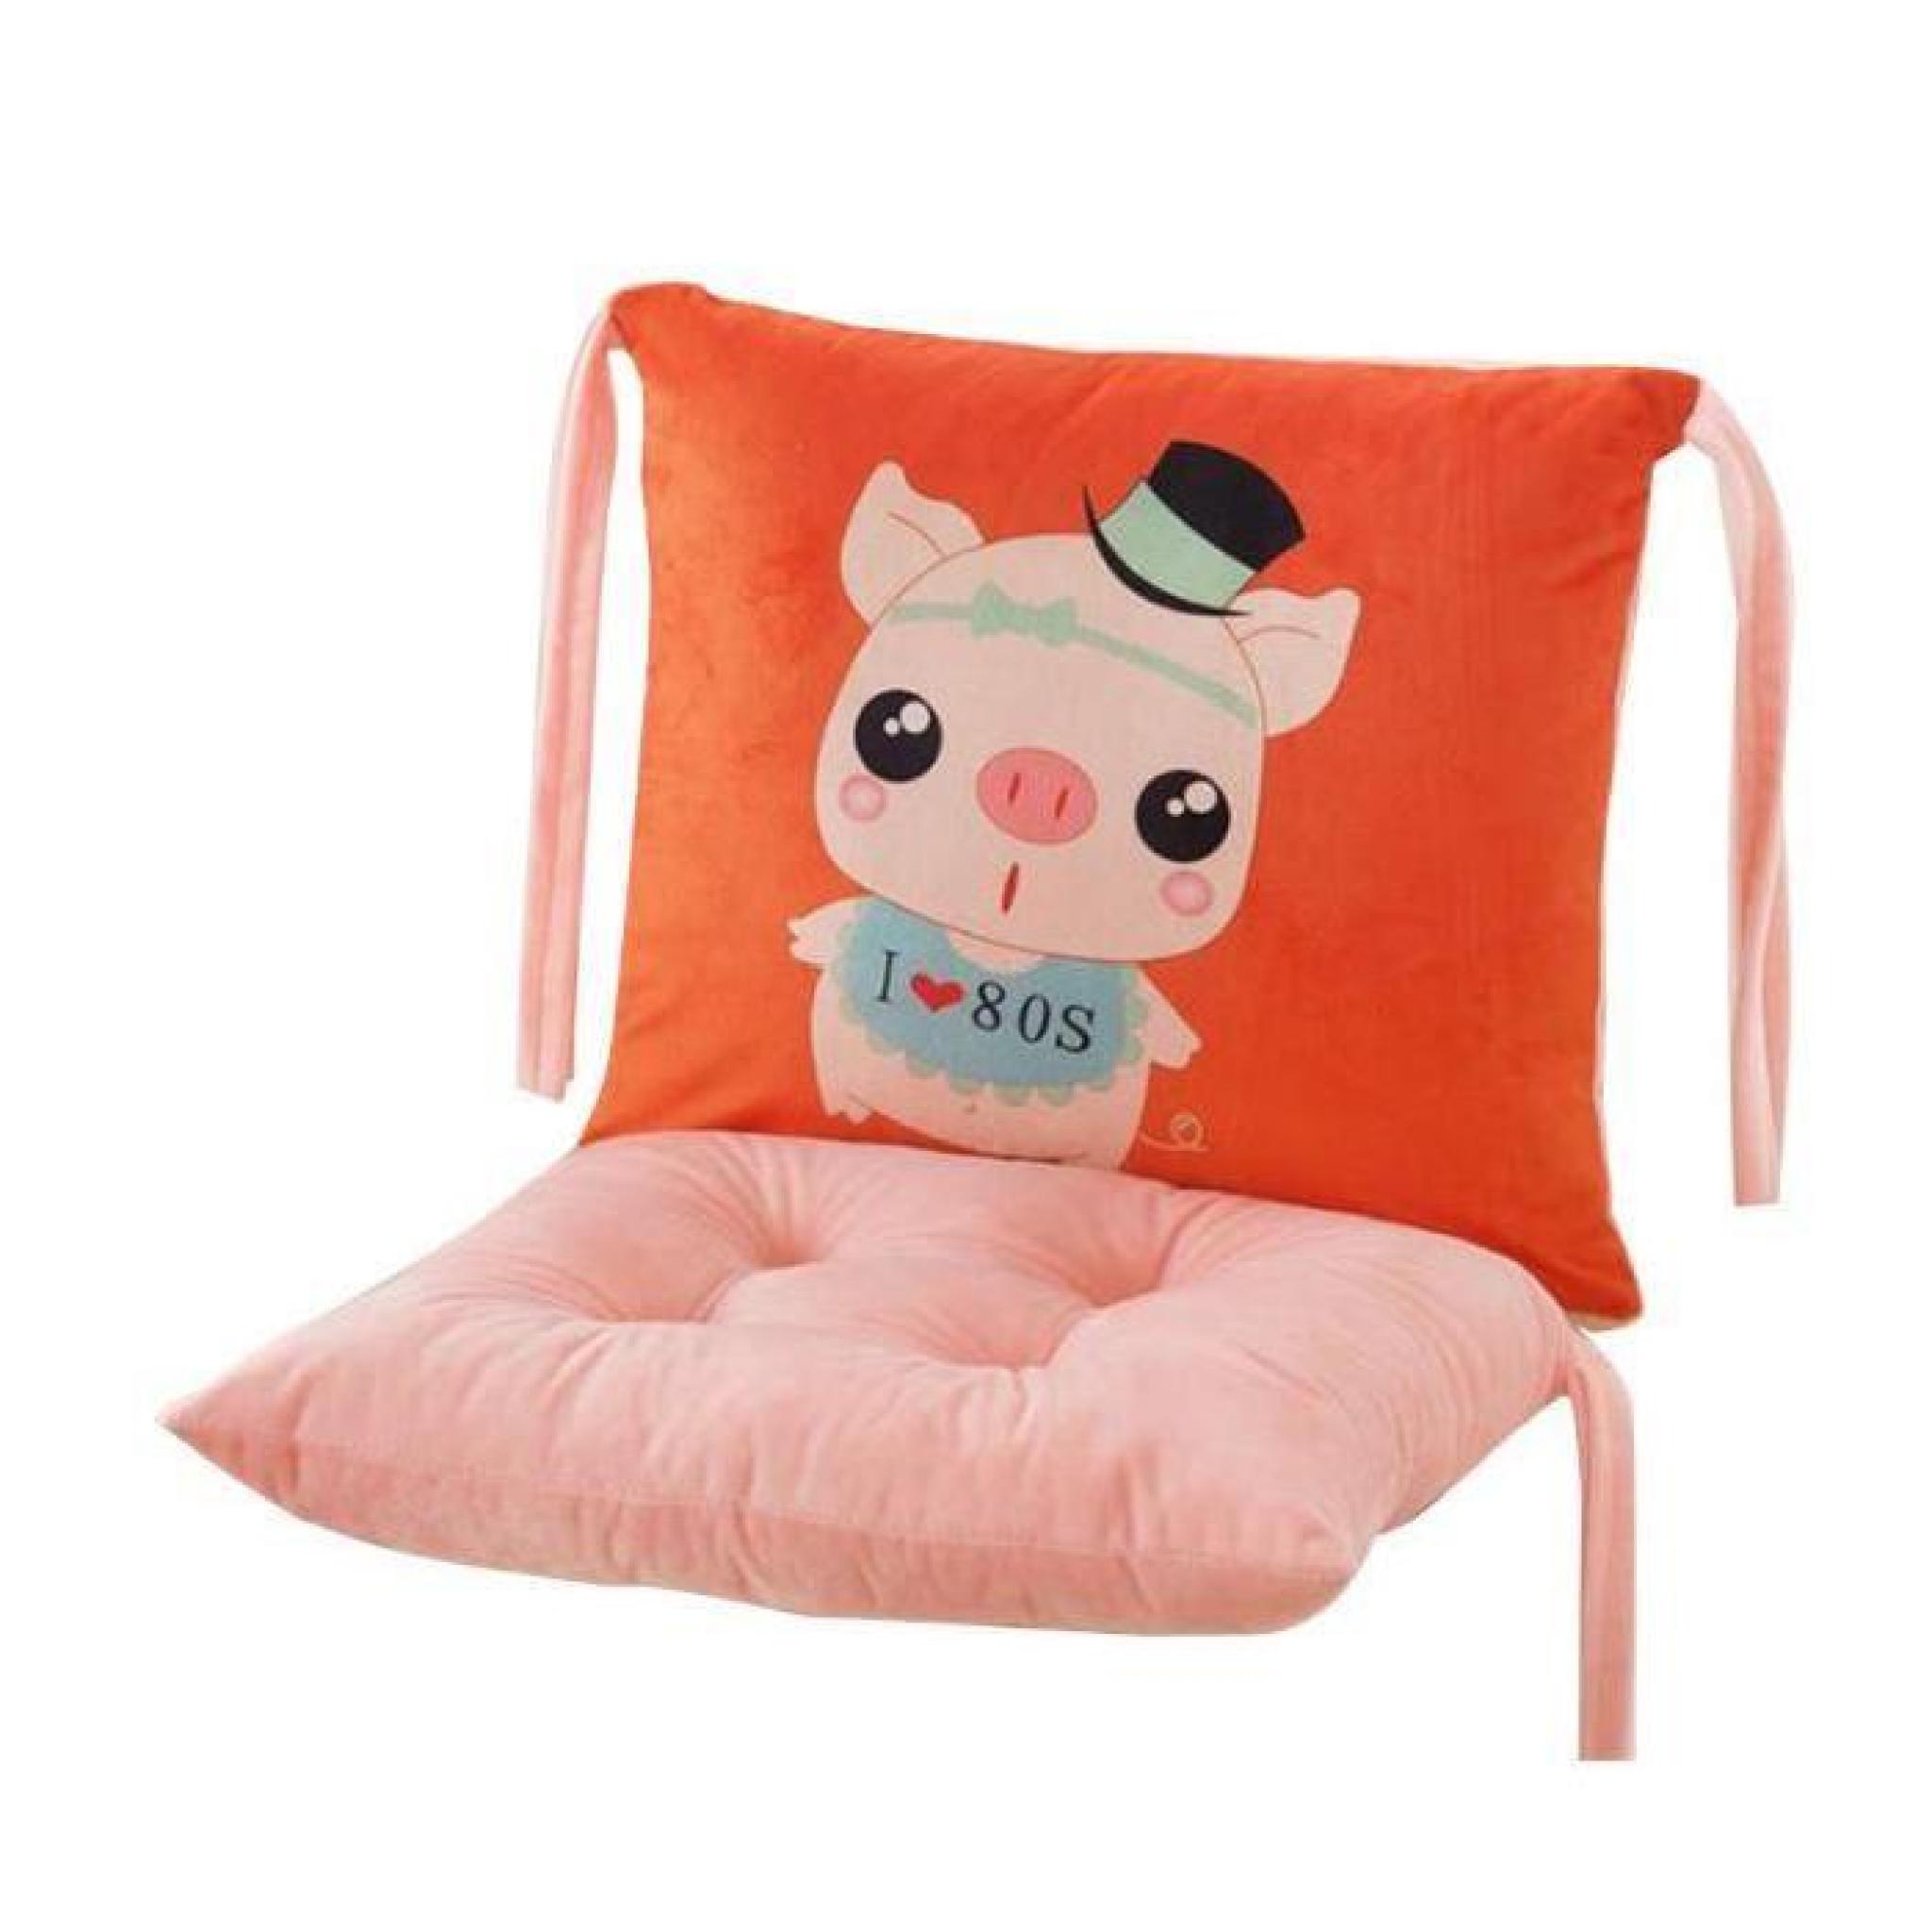 Nouveau coussin de chaise Lovely Coussin de chaise en coton Print